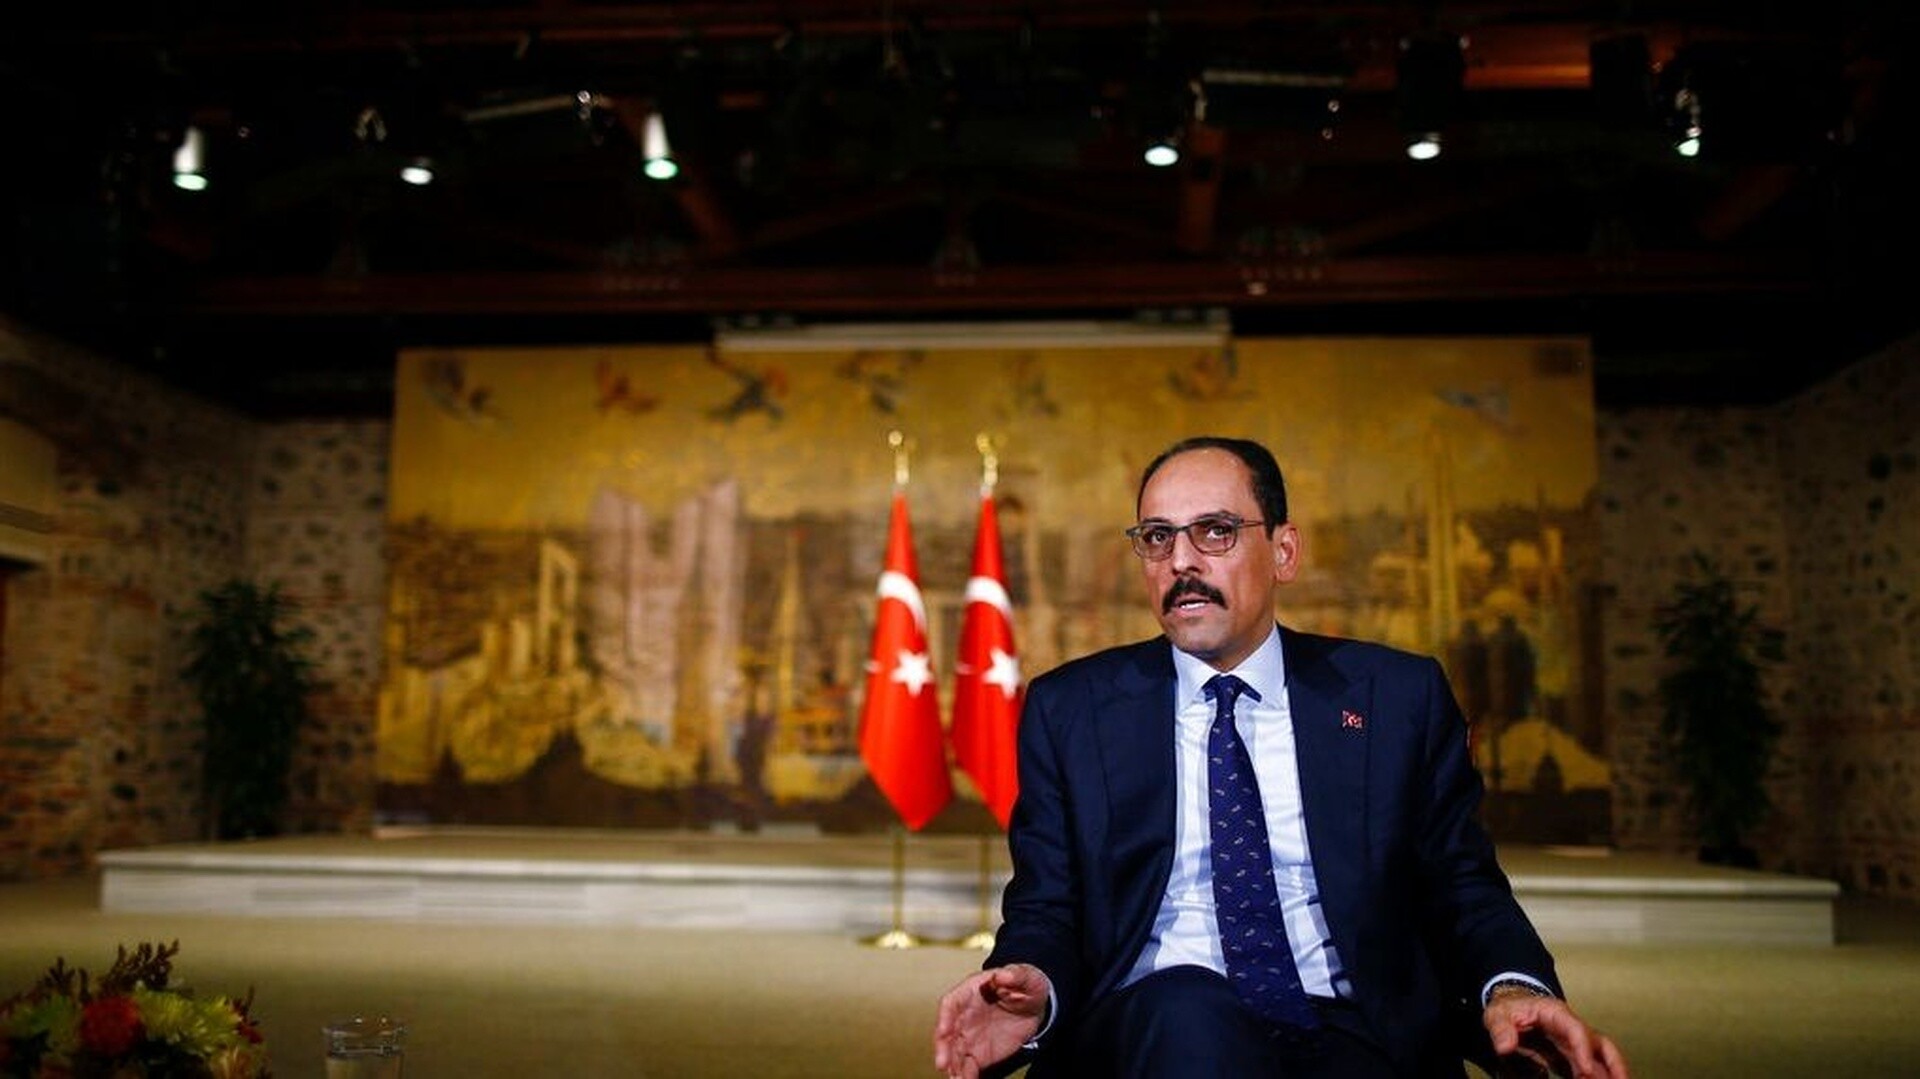 Ο διευθυντής της CIA ζήτησε από τον επικεφαλής της τουρκικής MΙT  να αναλάβει ρόλο μεσολαβητή